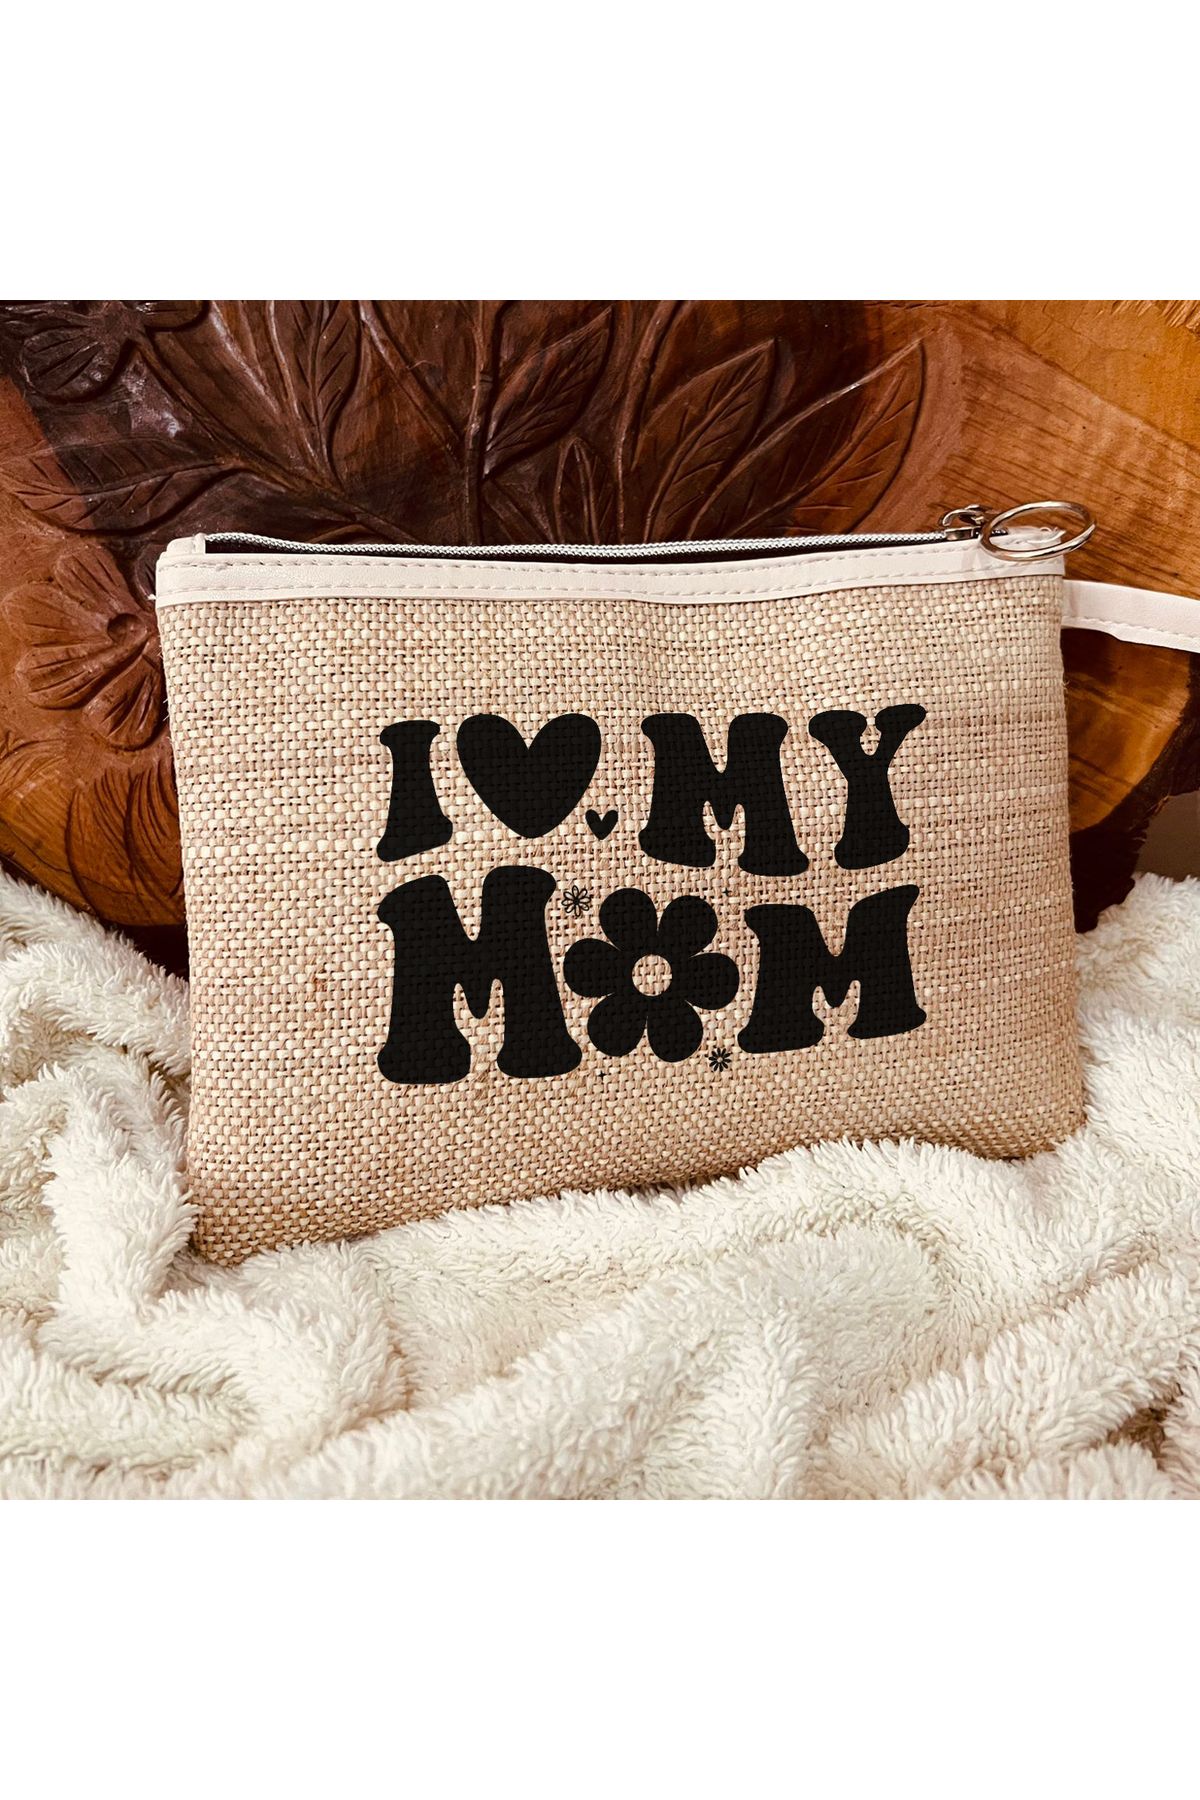 TexKid Annemi Seviyorum/I Love My Mom Baskılı 3'lü Matruşka Hediye Clutch/Makyaj/El Çantası